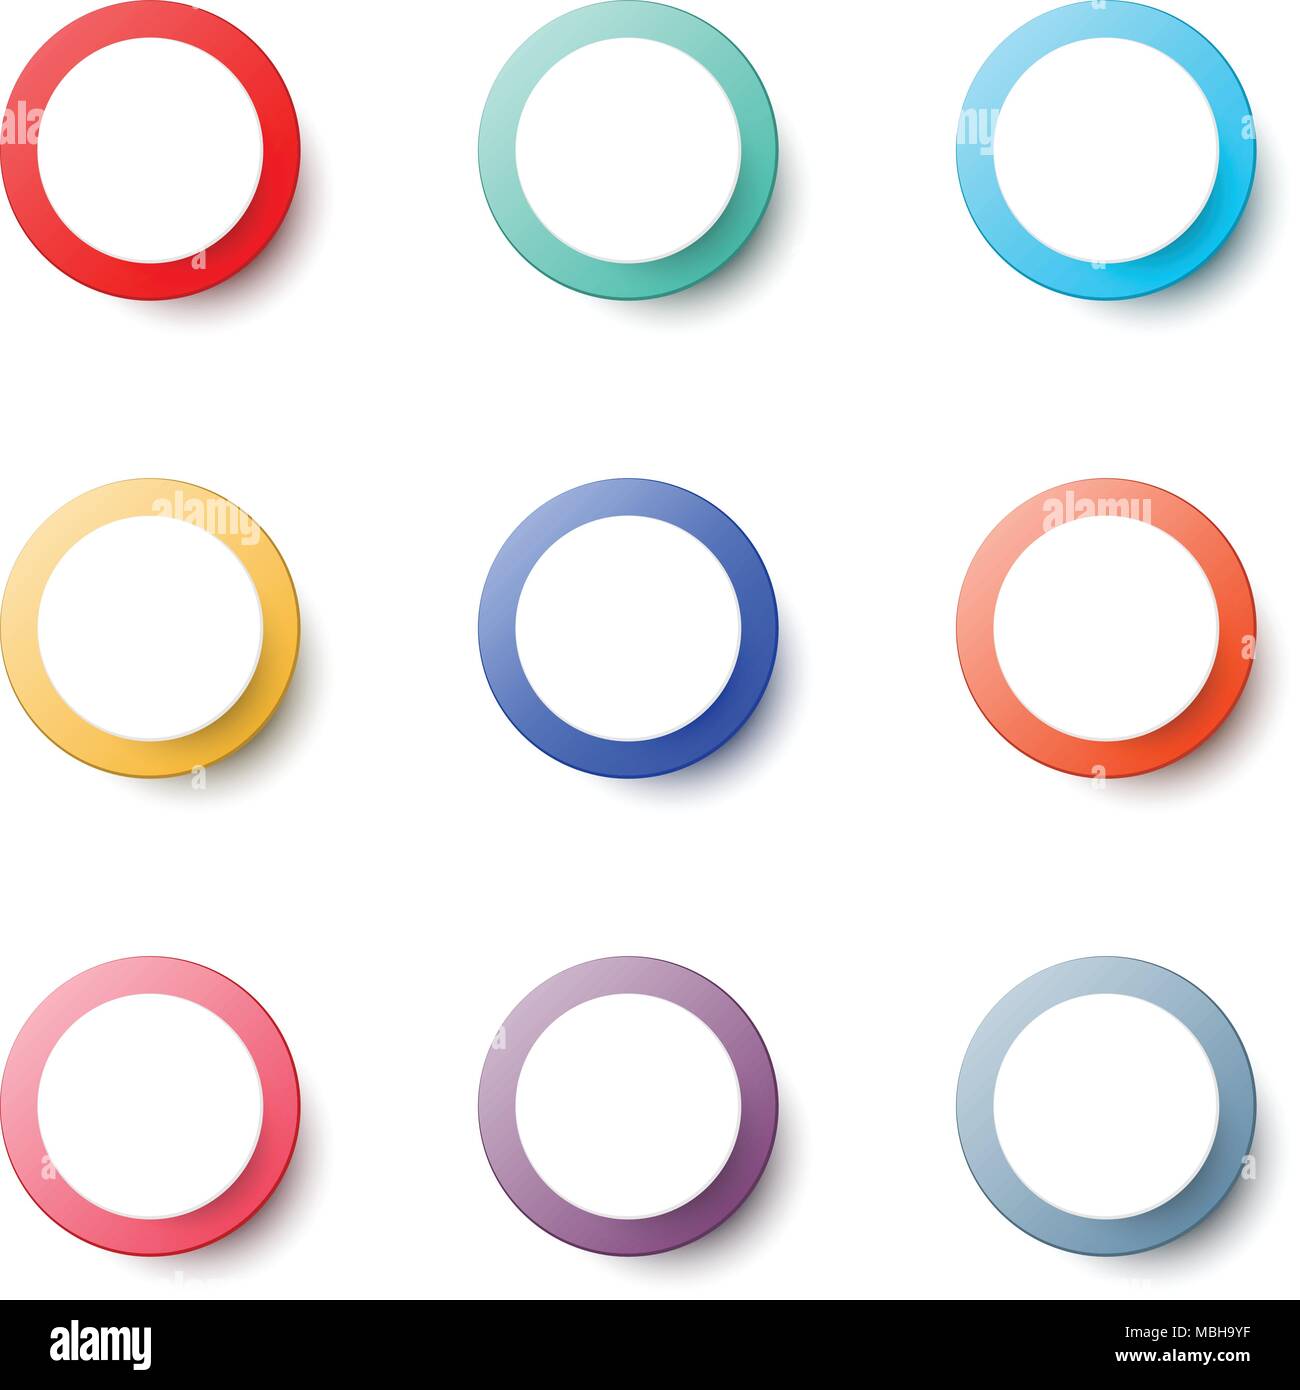 Einfache Bunte Kreis Symbol Fur Papier Grafik Ausschneiden Idee Designkonzept Stock Vektorgrafik Alamy